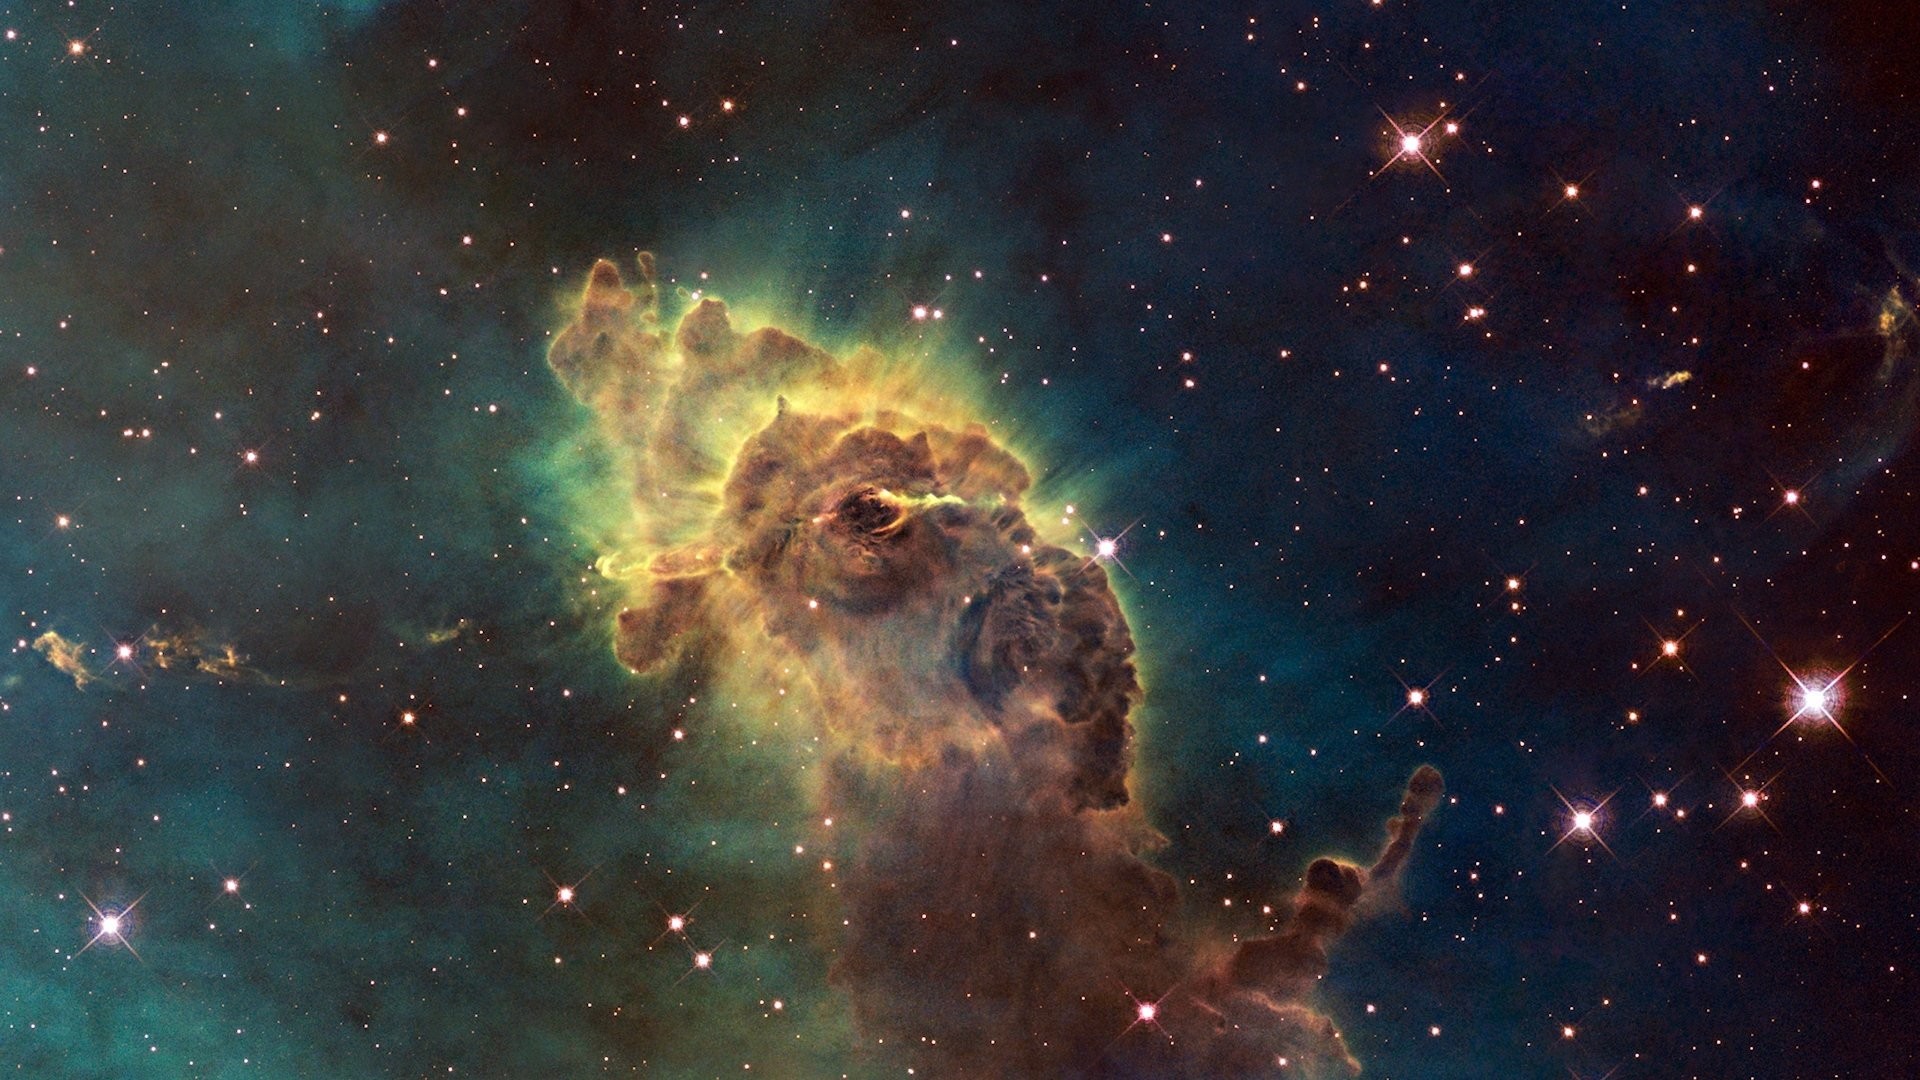 Hubble Deep Space hubble ultra deep field 368749